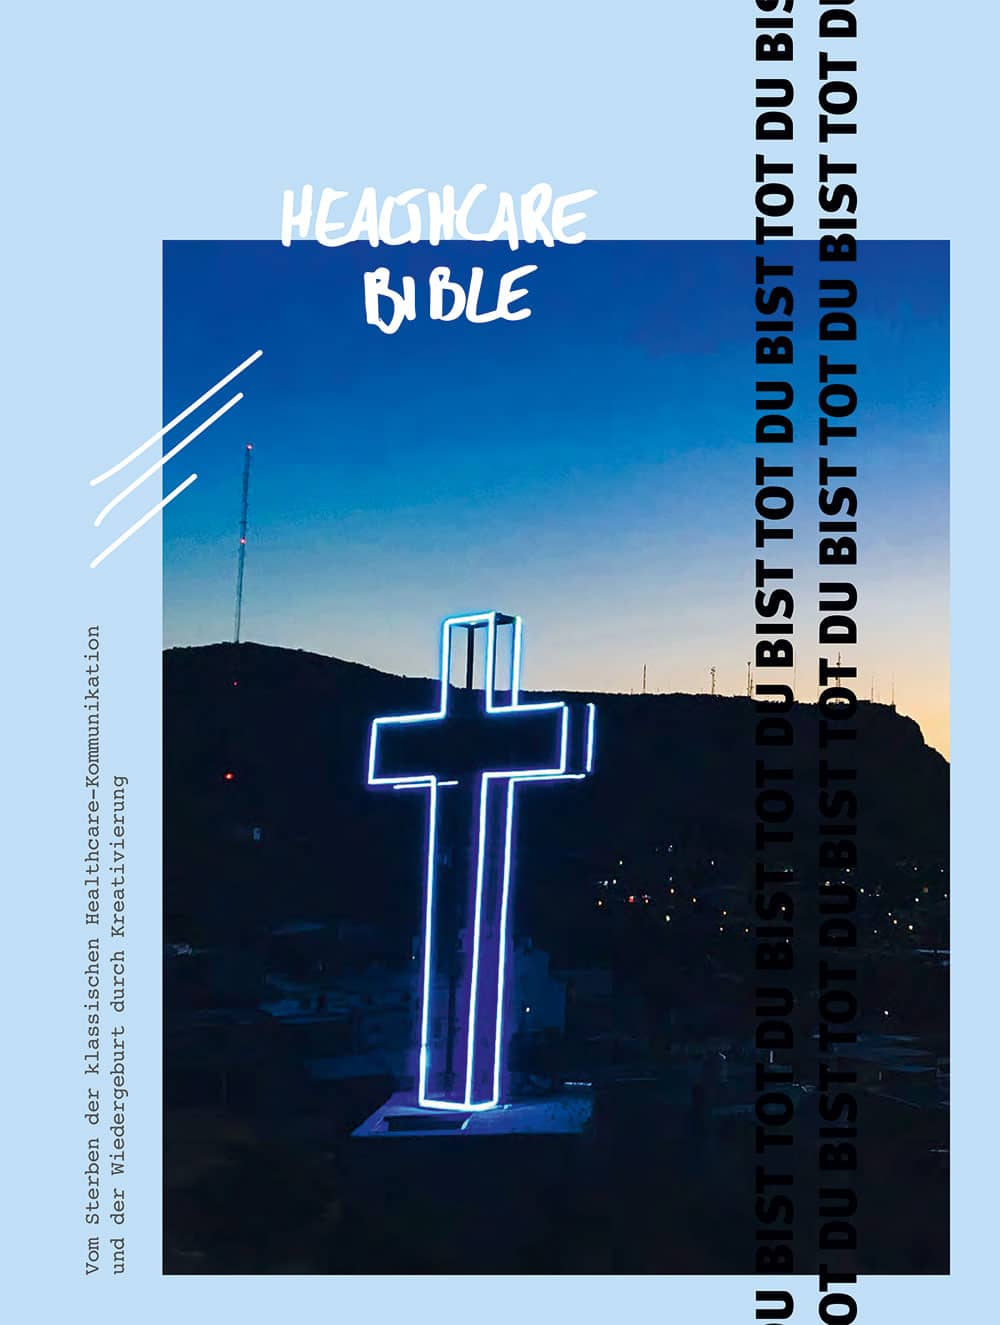 Cover der "Healthcare Bible" für die Medizinische Hochschule Hannover